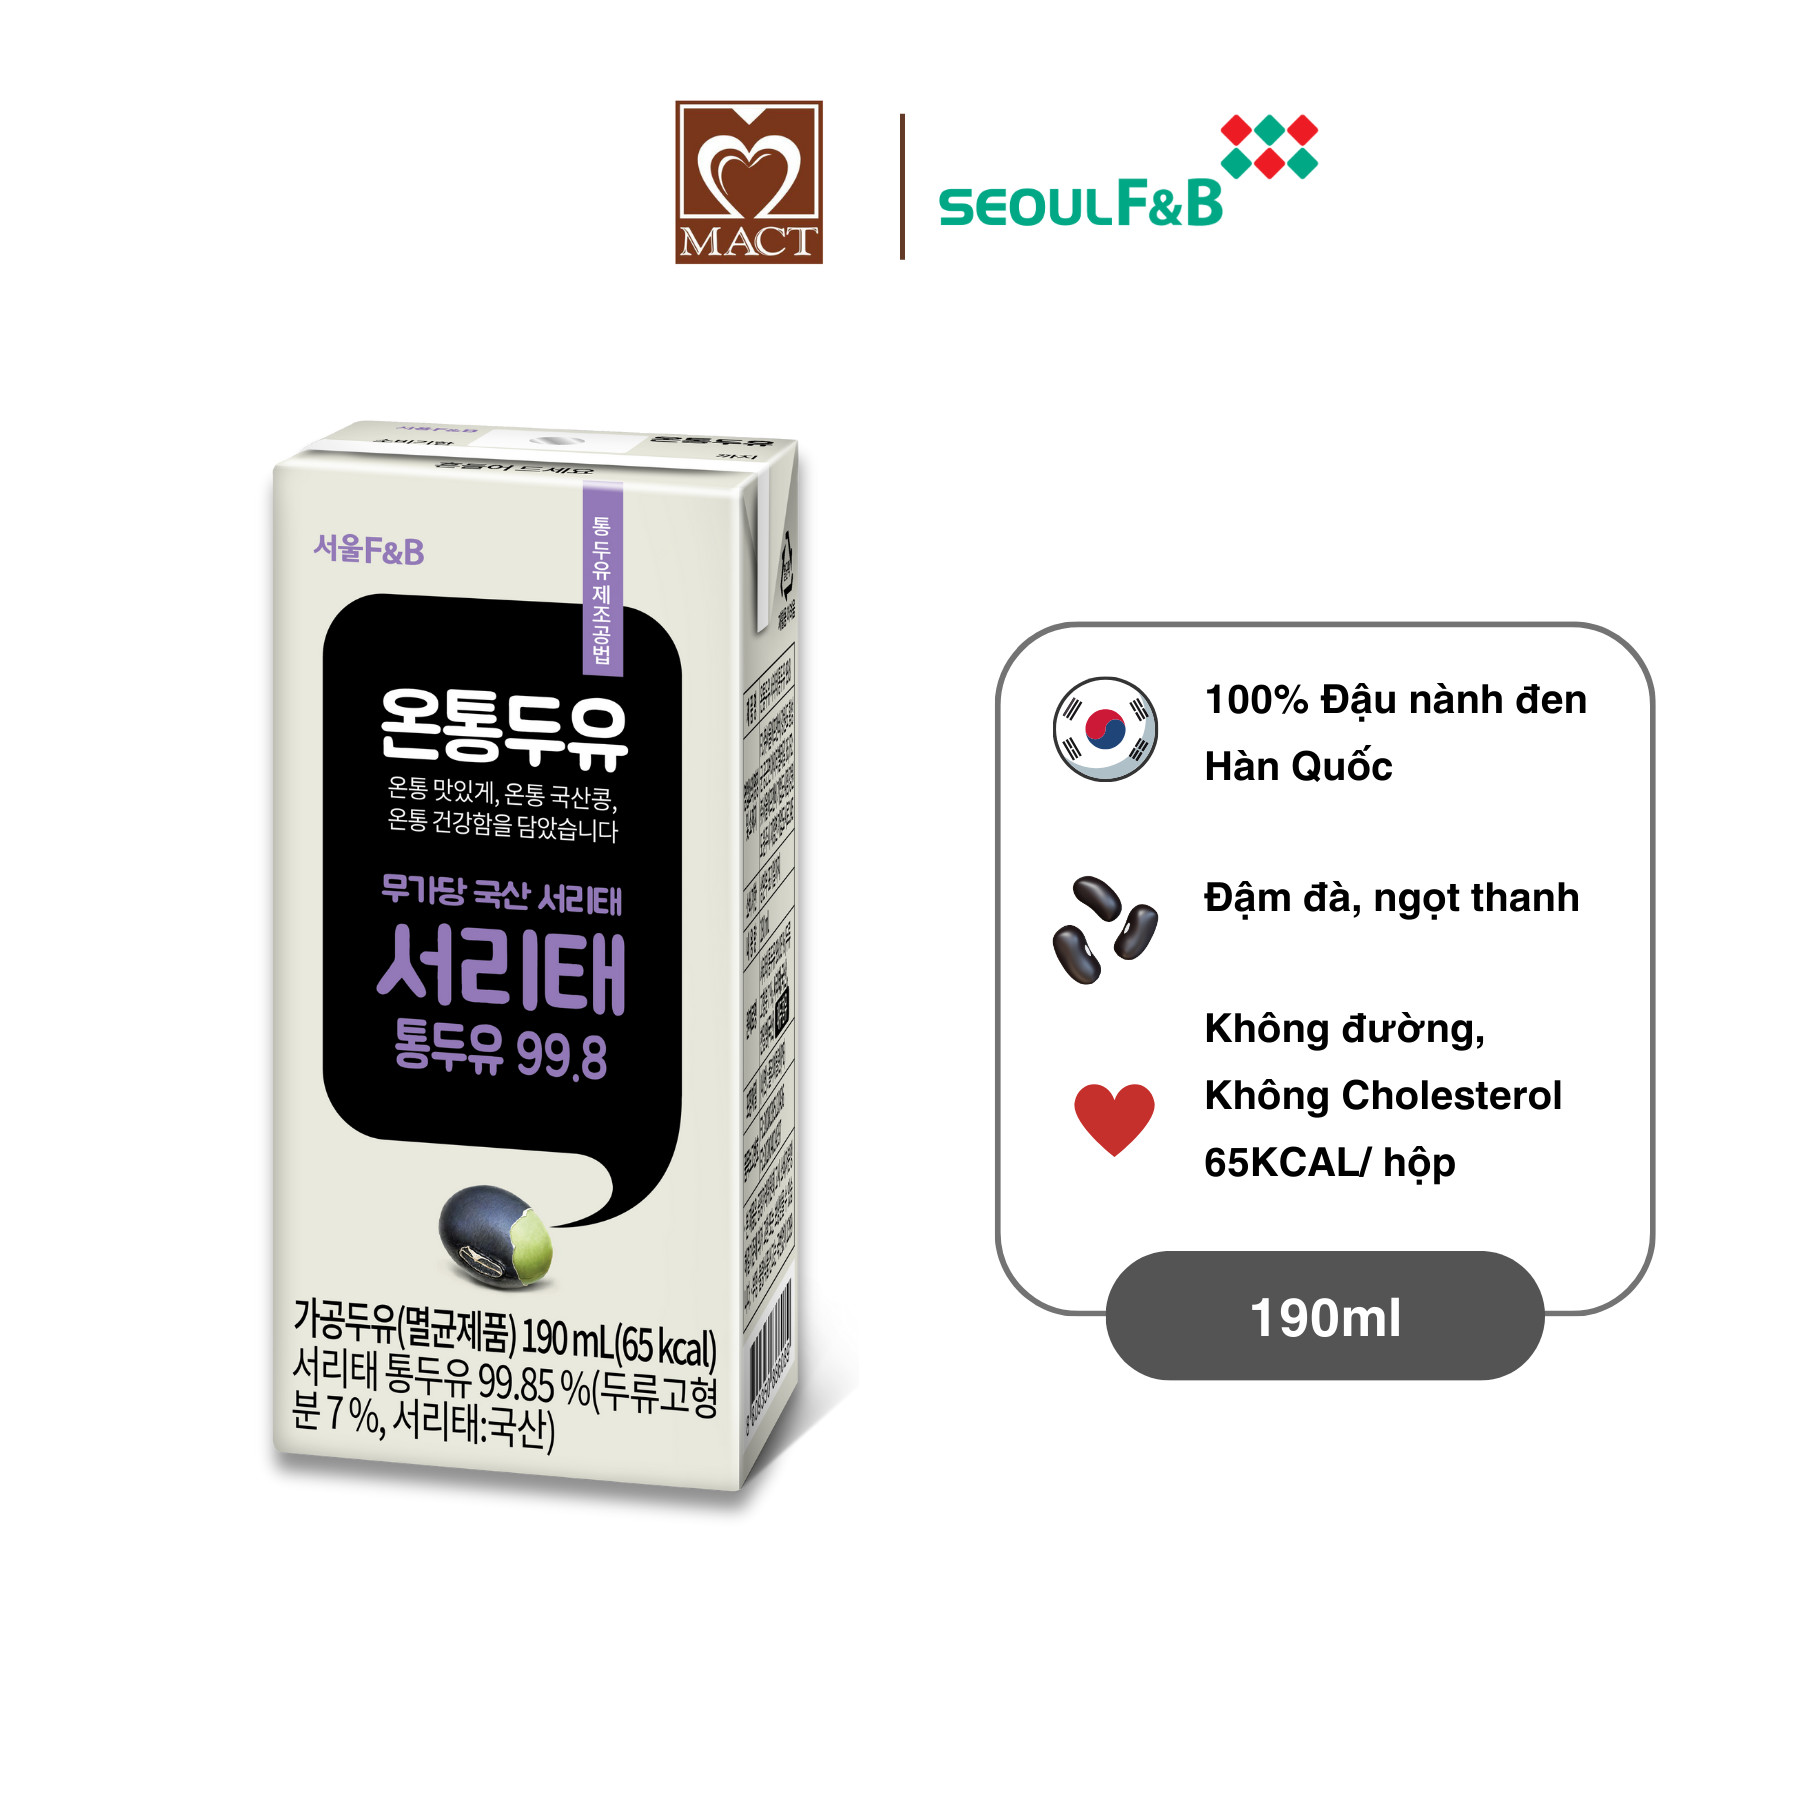 Sữa đậu nành đen Hàn Quốc cao cấp ONTONG Seoul F&B - Nguyên chất đậu nành đen 99,8% - 190ml